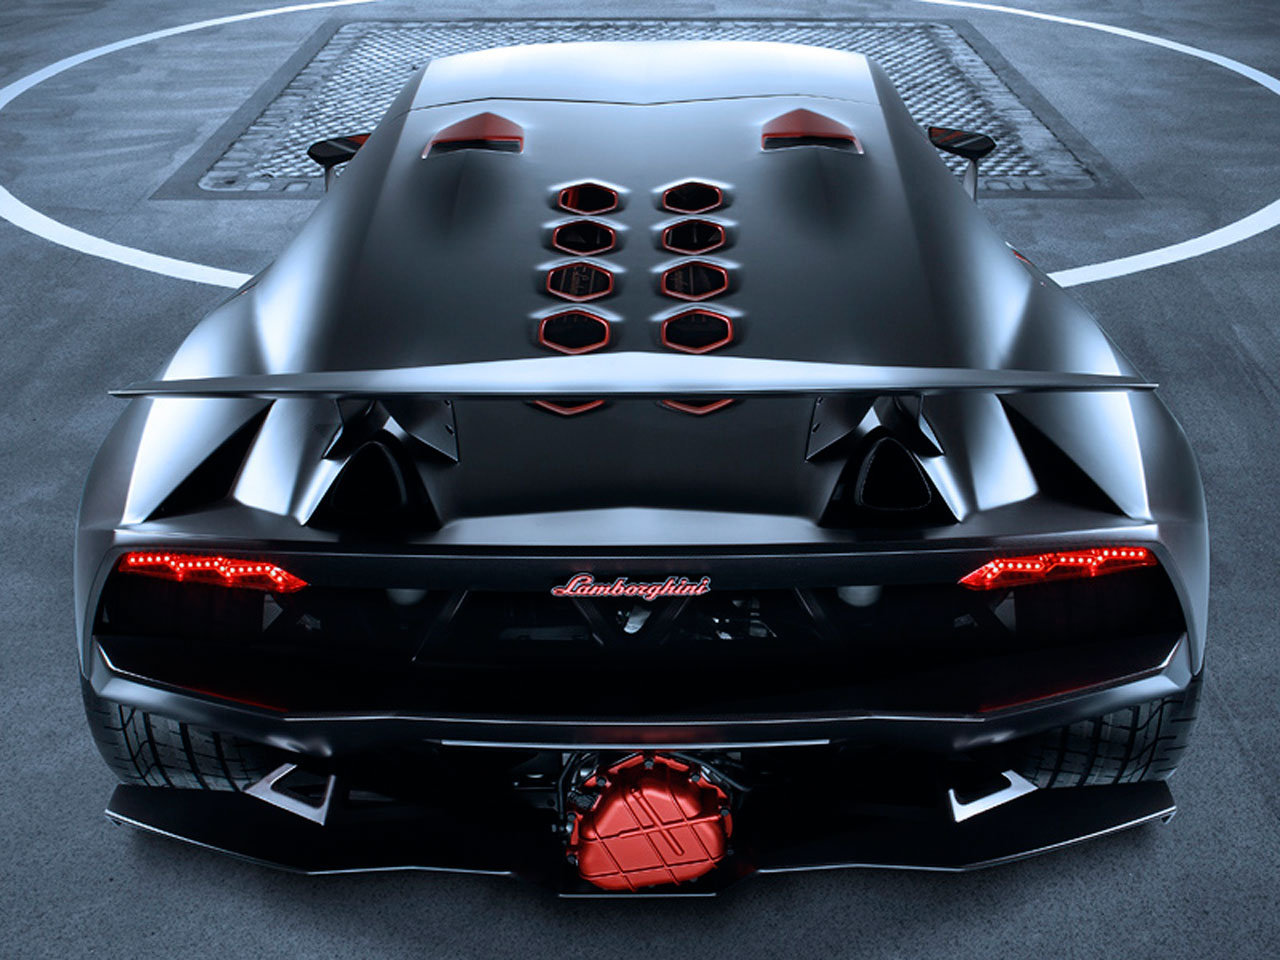 Lamborghini Sesto Elemento - Lamborghini Sesto Elemento Portrait , HD Wallpaper & Backgrounds